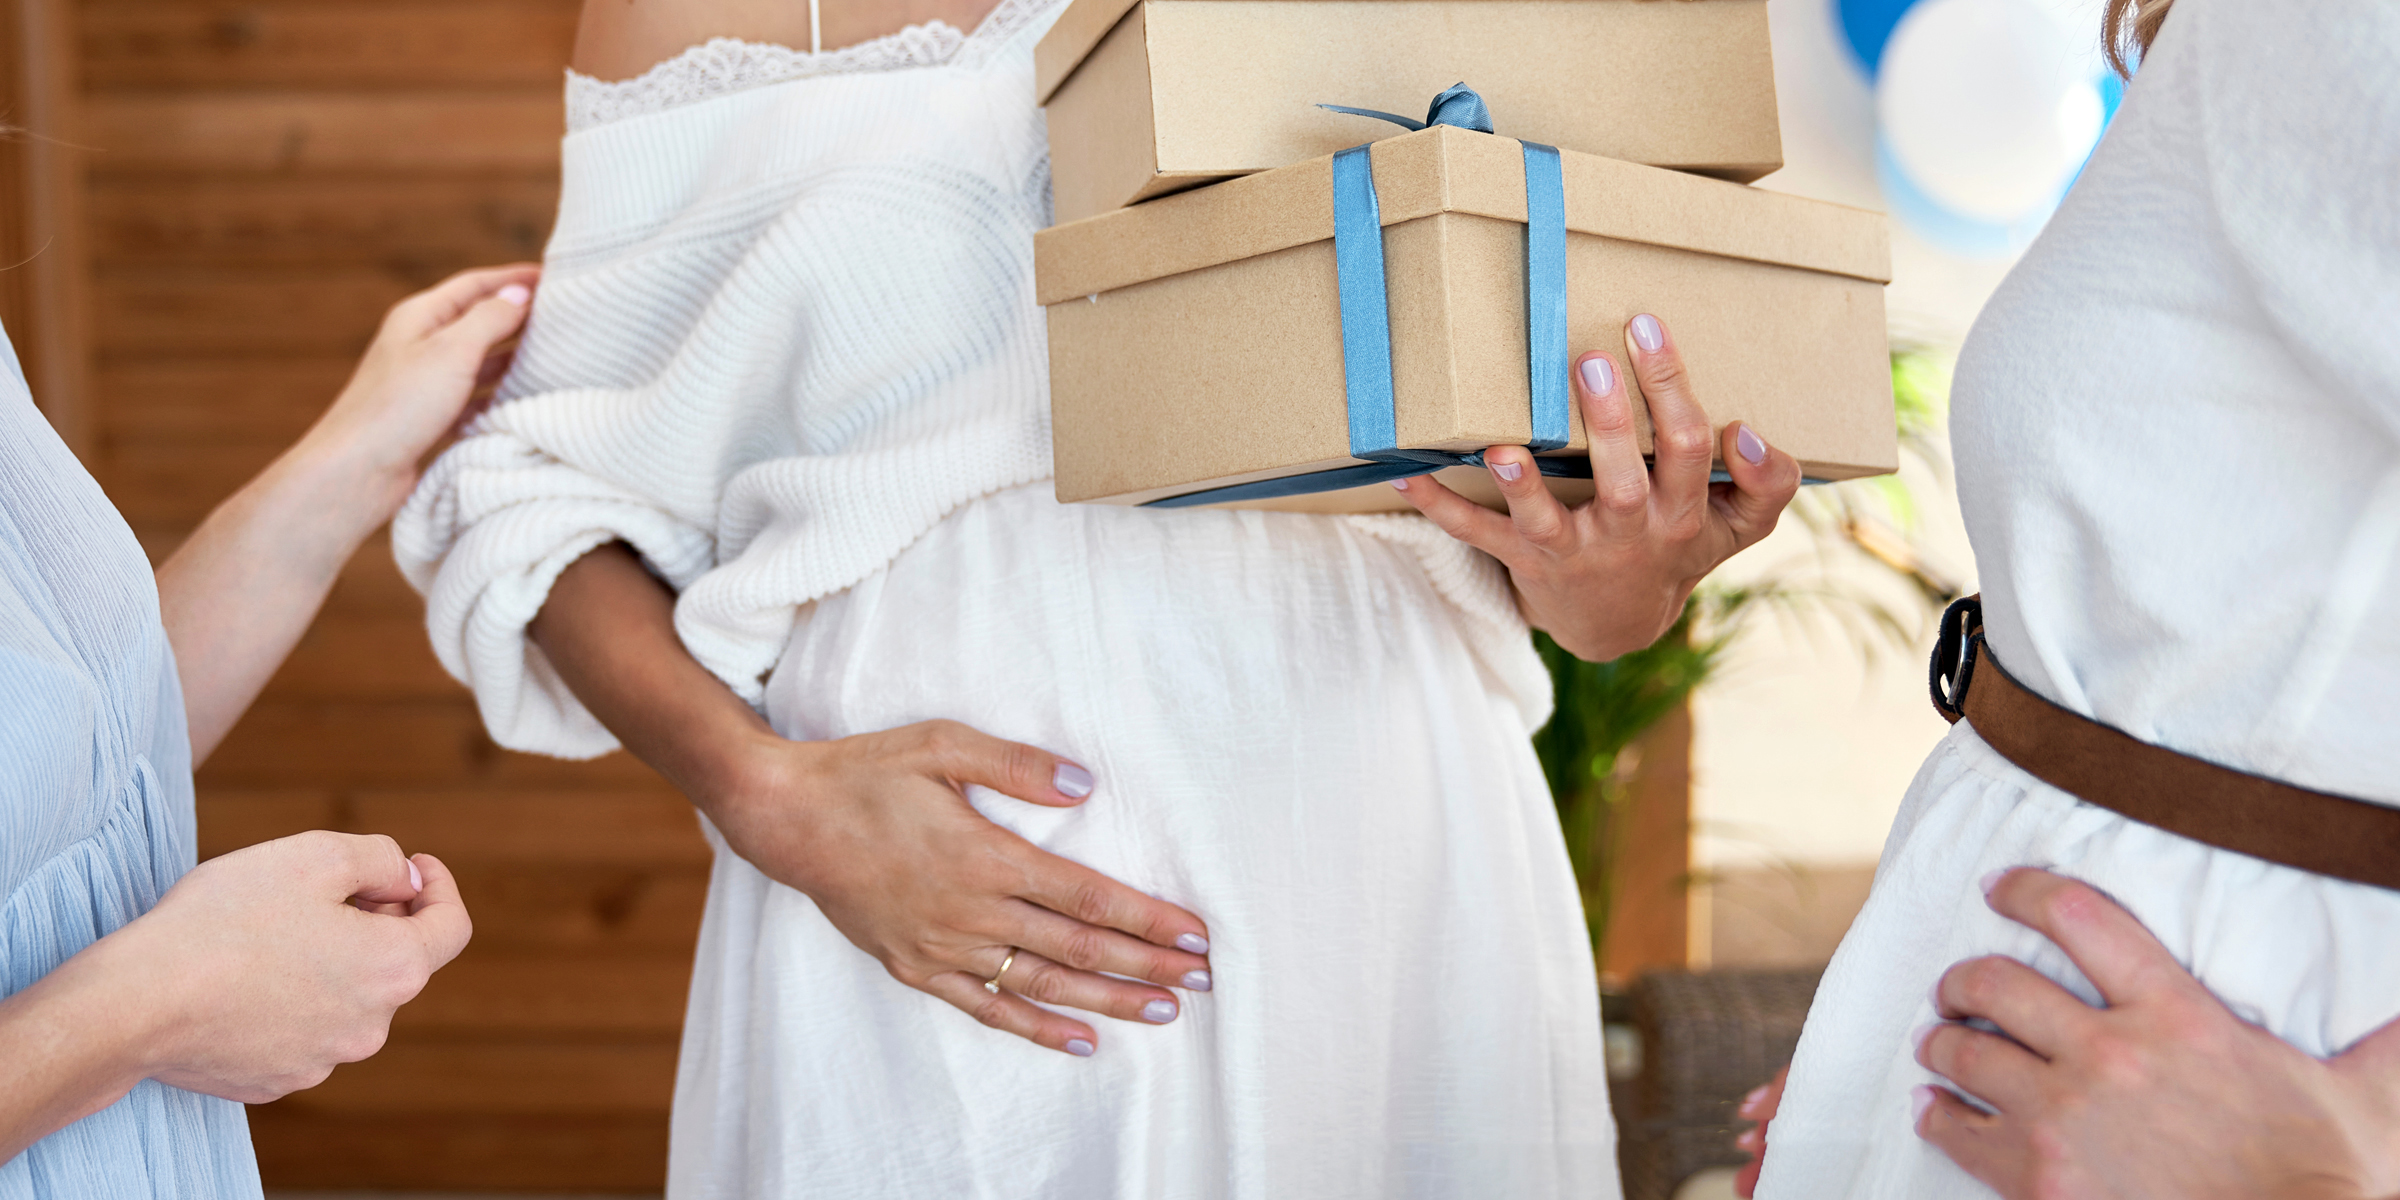 Una mujer embarazada sujetándose el vientre | Fuente: Shutterstock